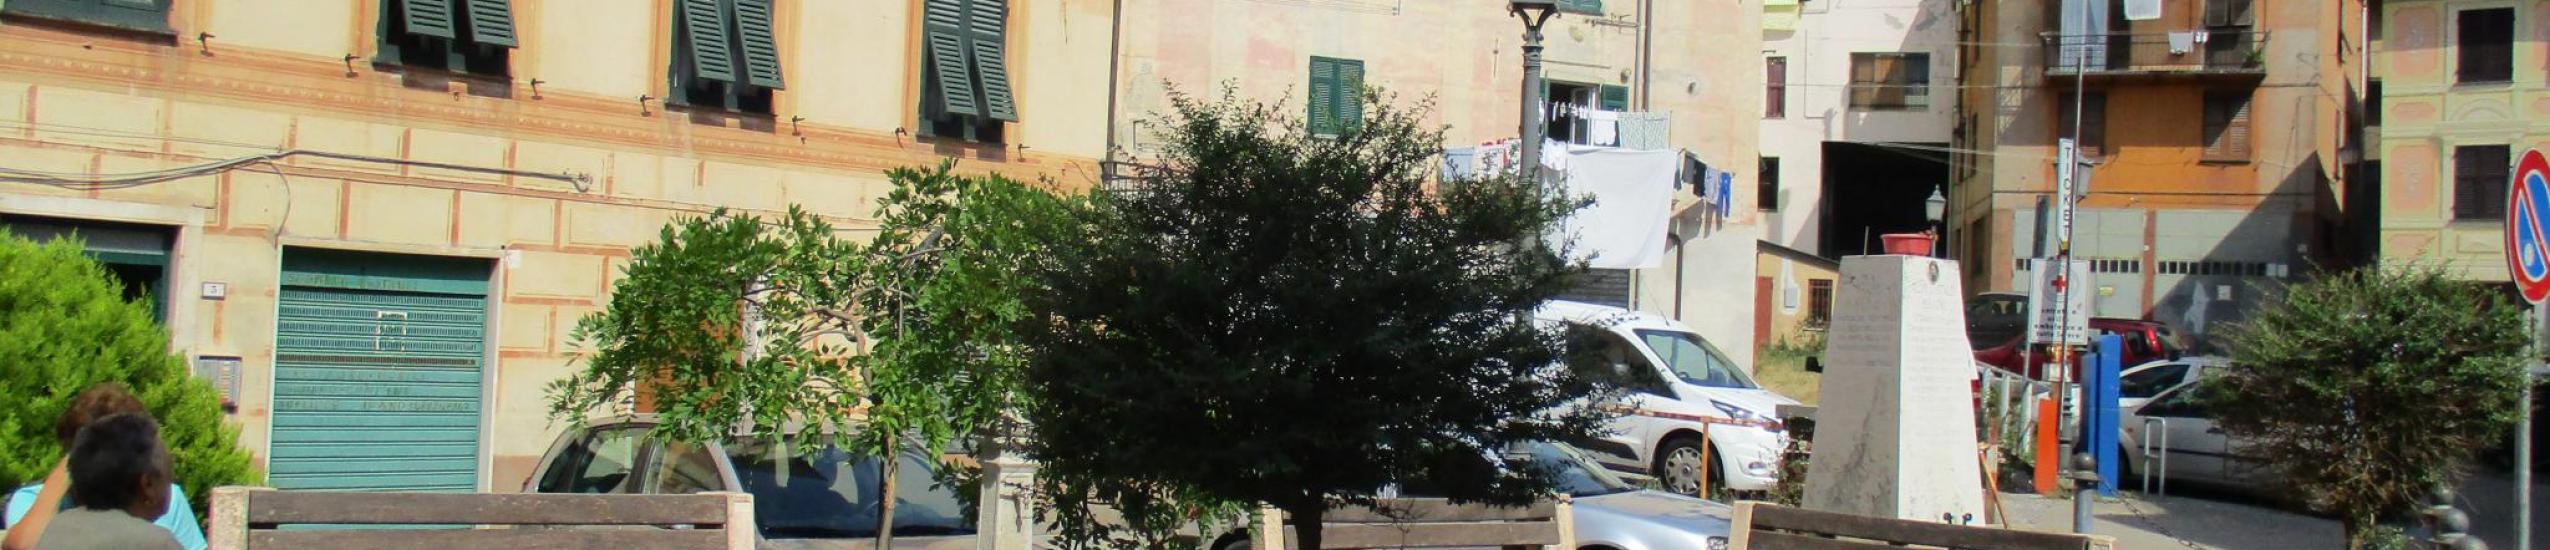 Piazza Gastaldi